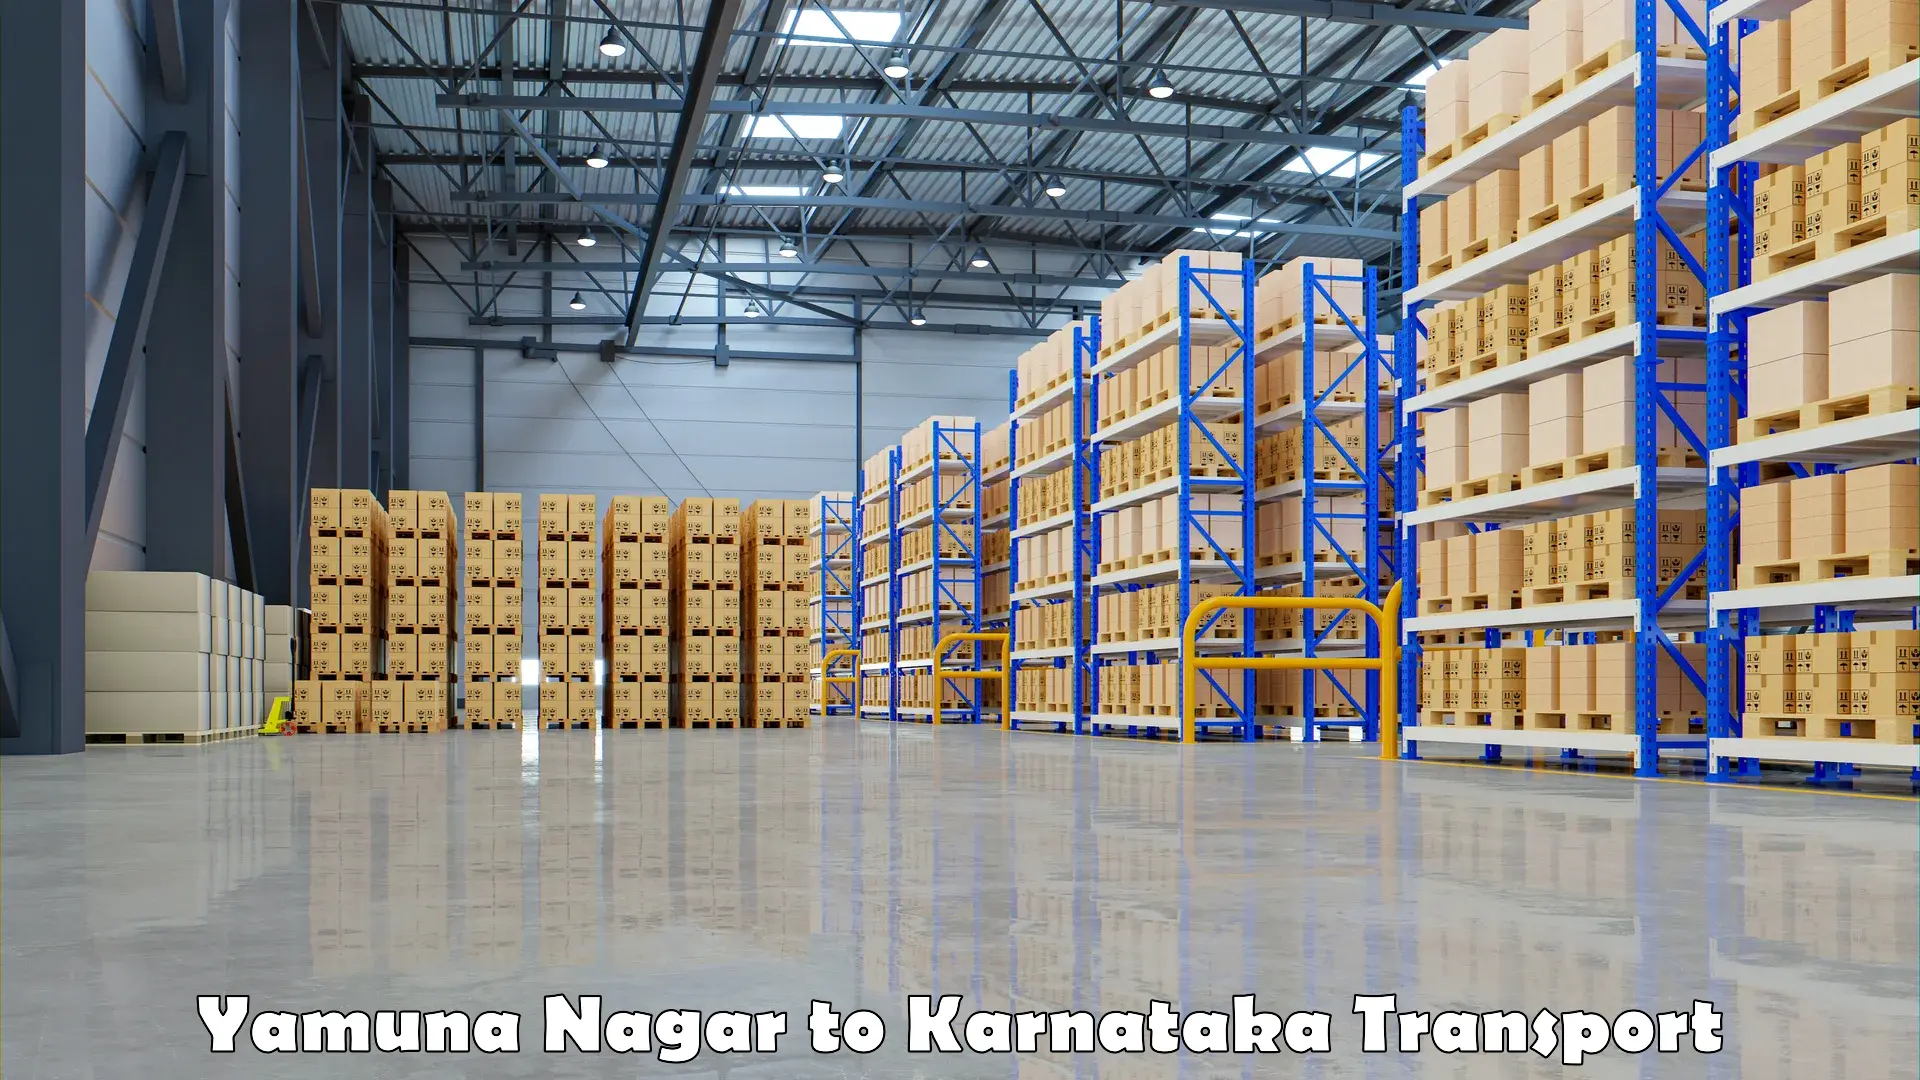 Shipping partner Yamuna Nagar to Karnataka